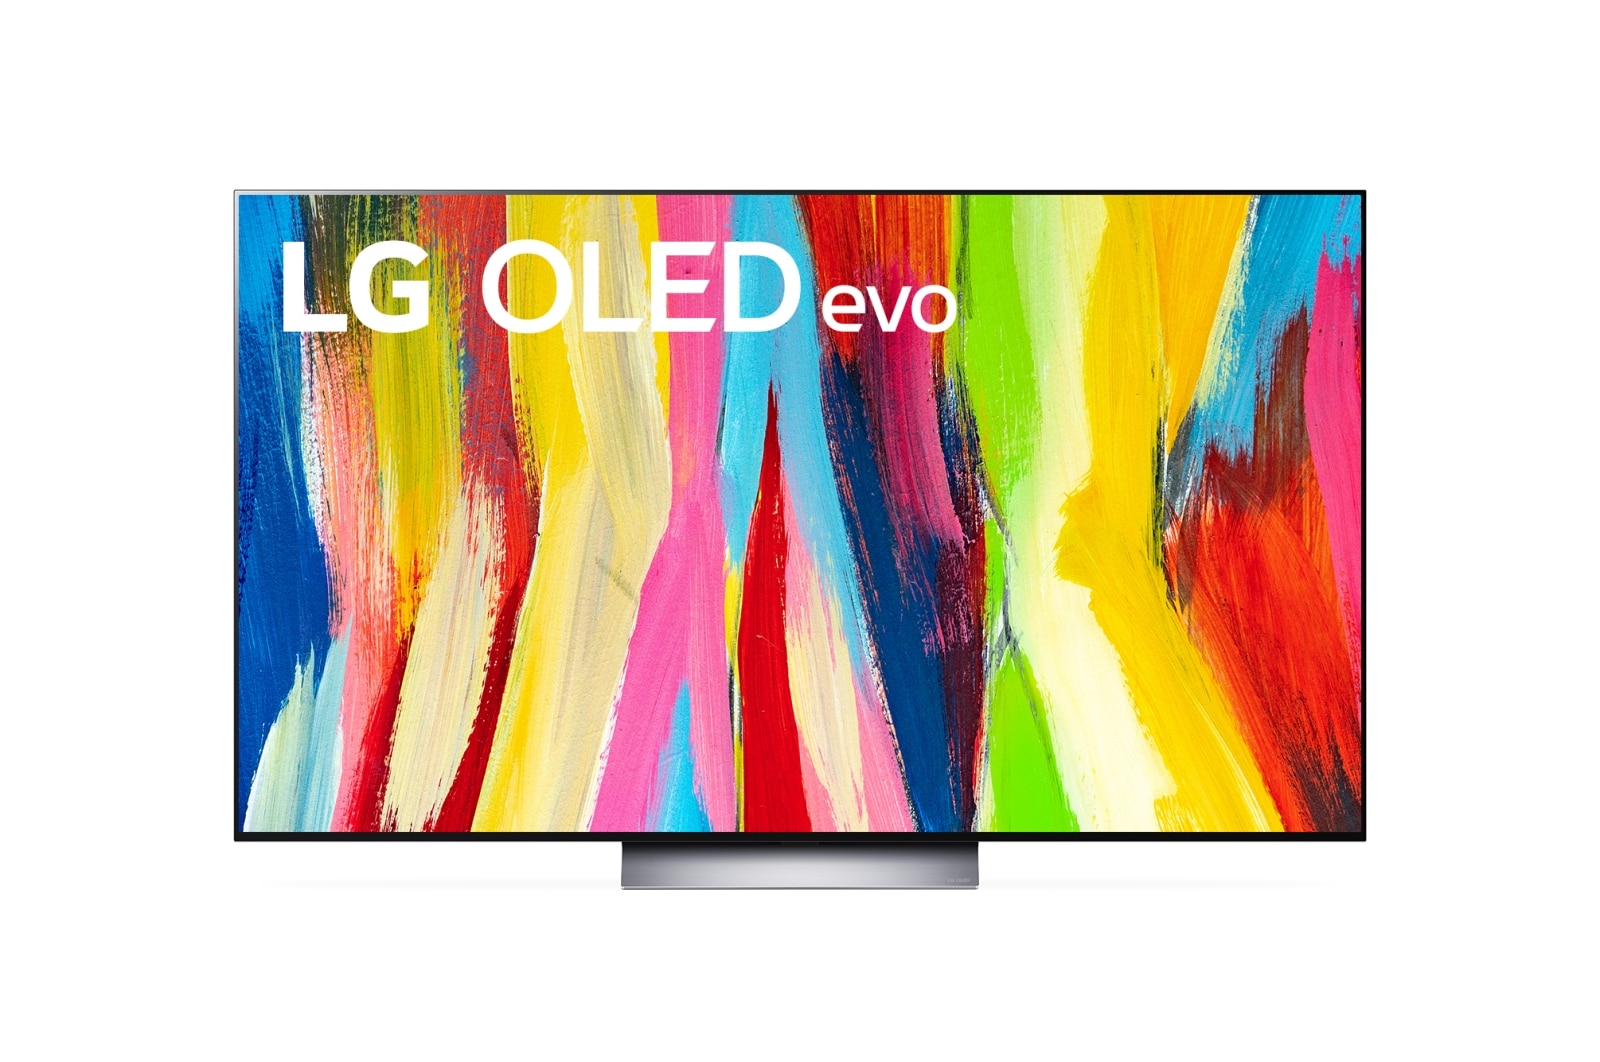 Телевизор LG C2 OLED65C24LA